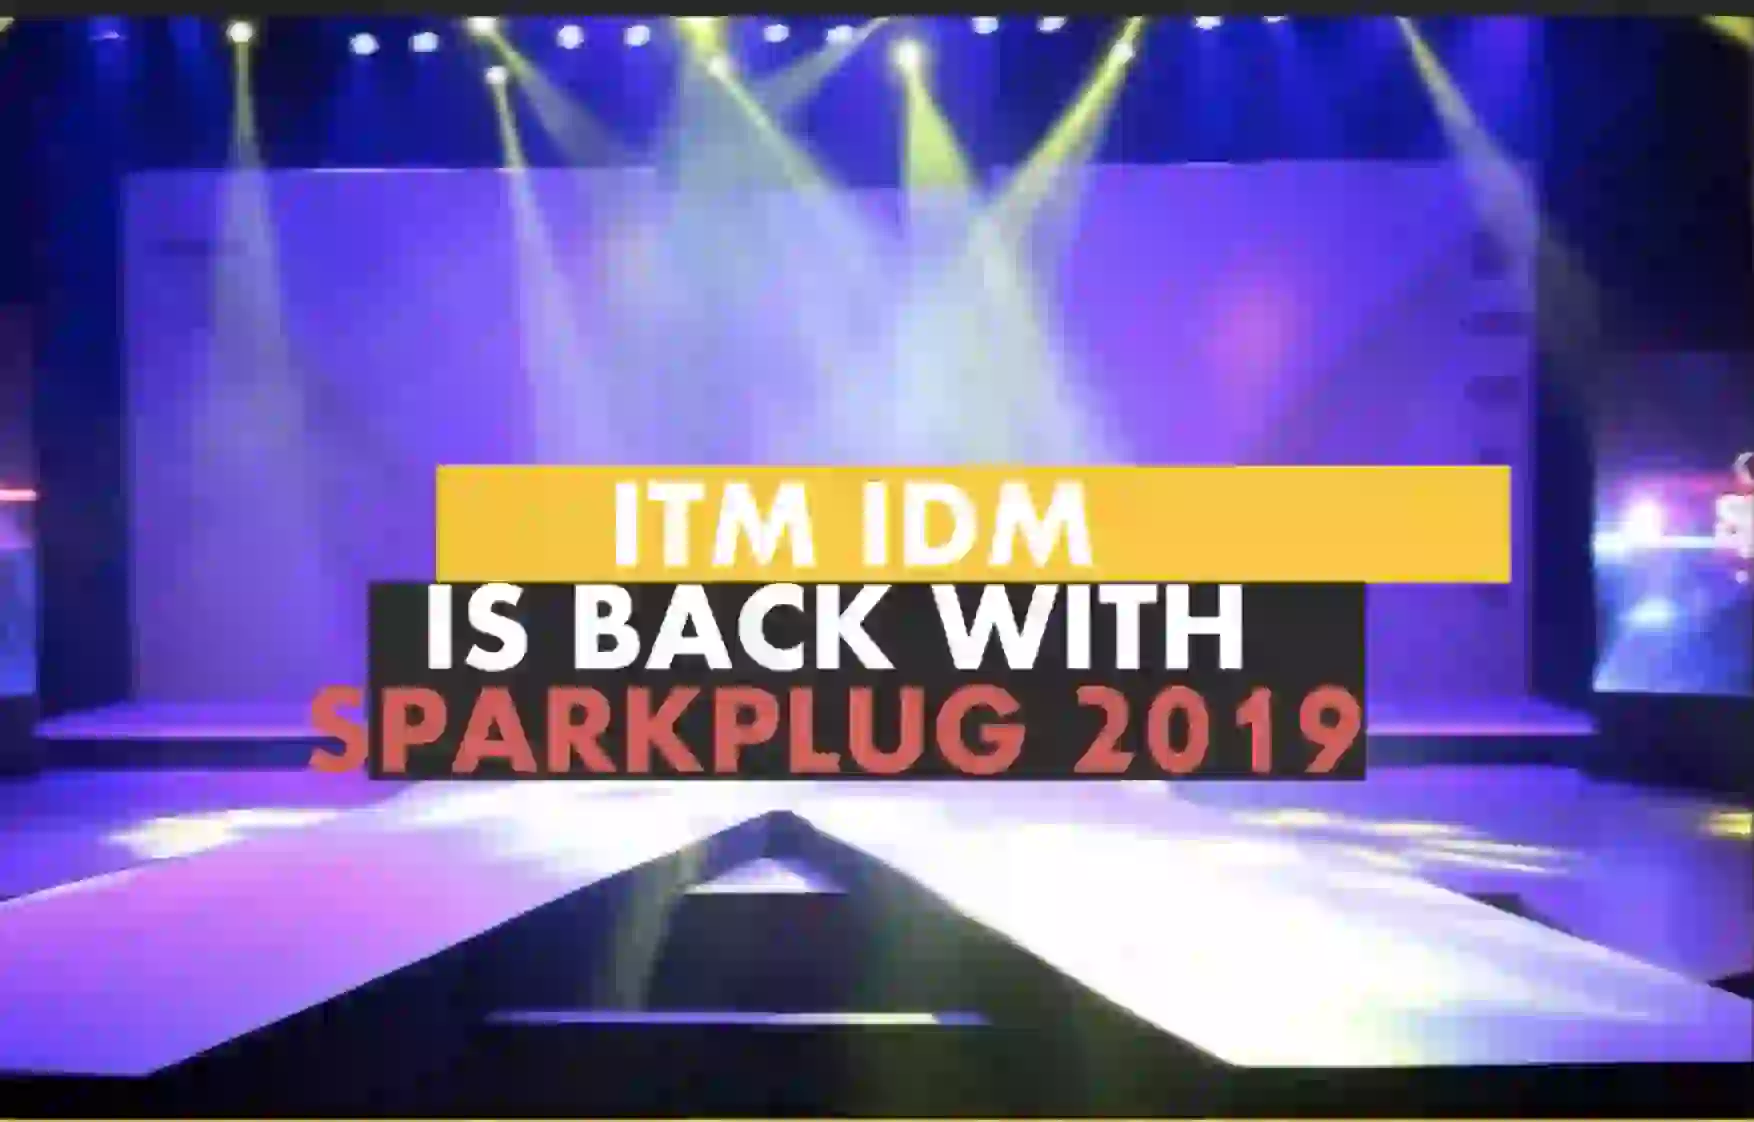 SparkPlug 2019